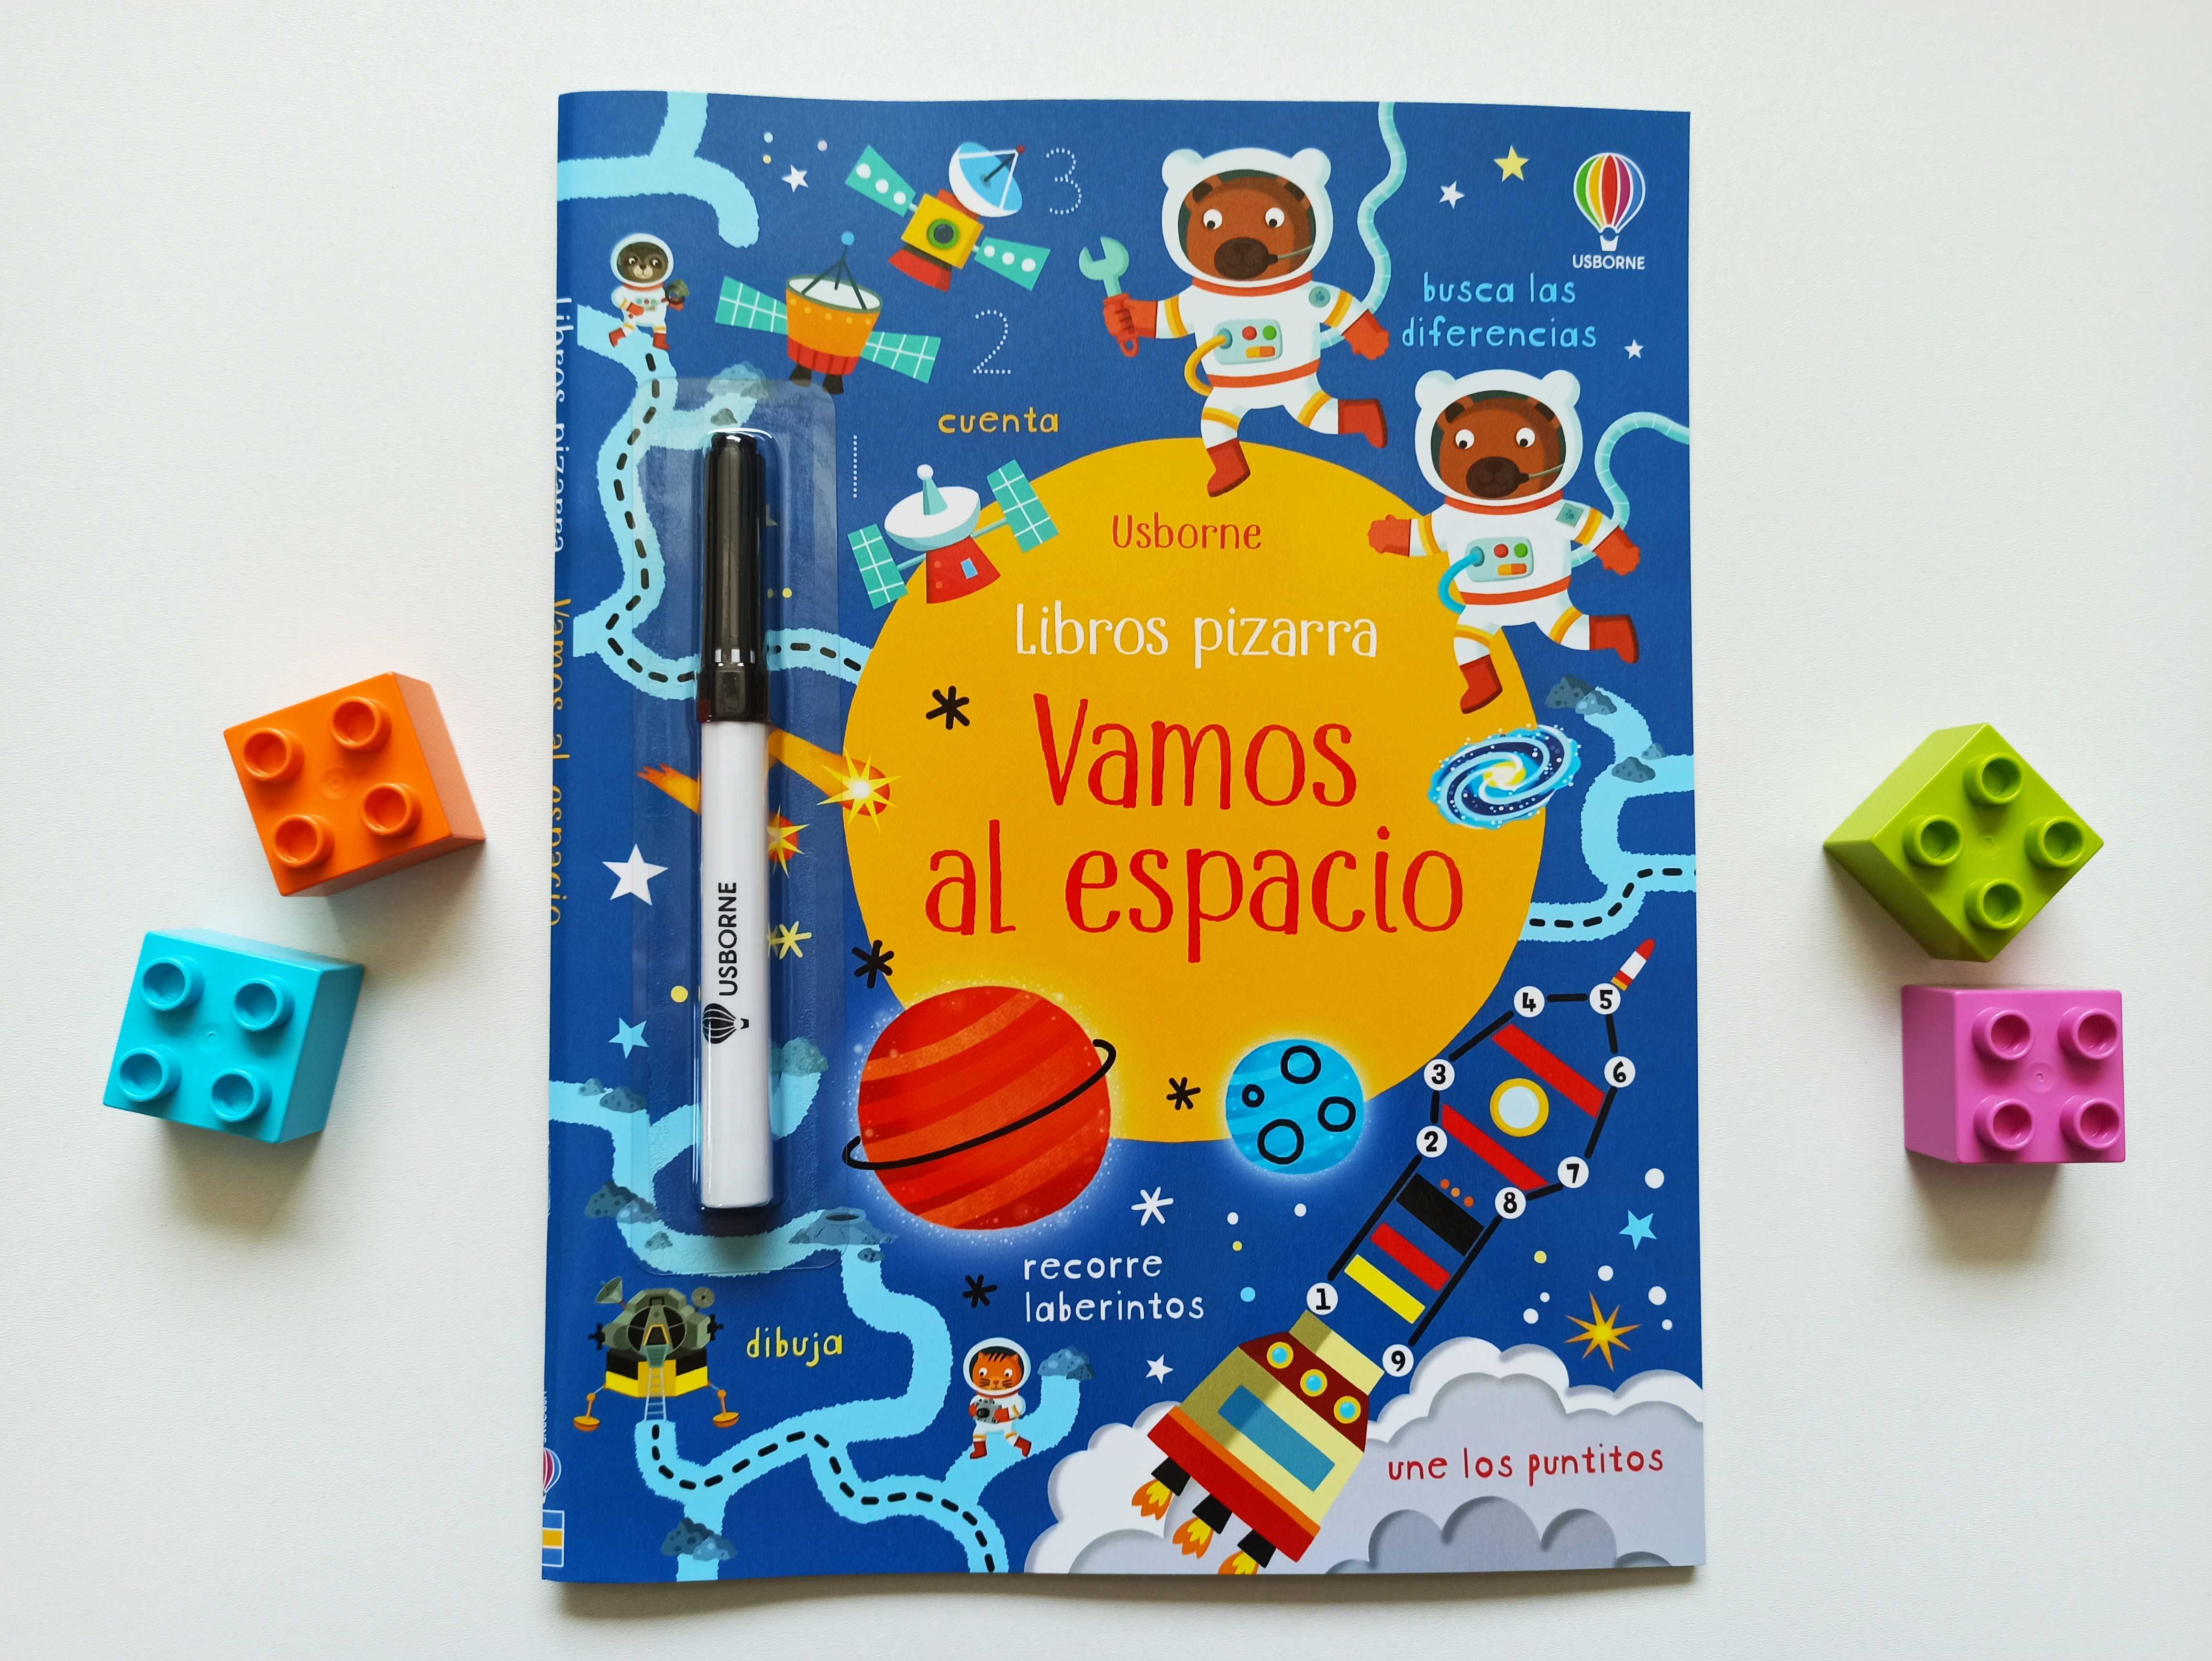 hiszpańska książka Usborne z pisakiem, kosmos